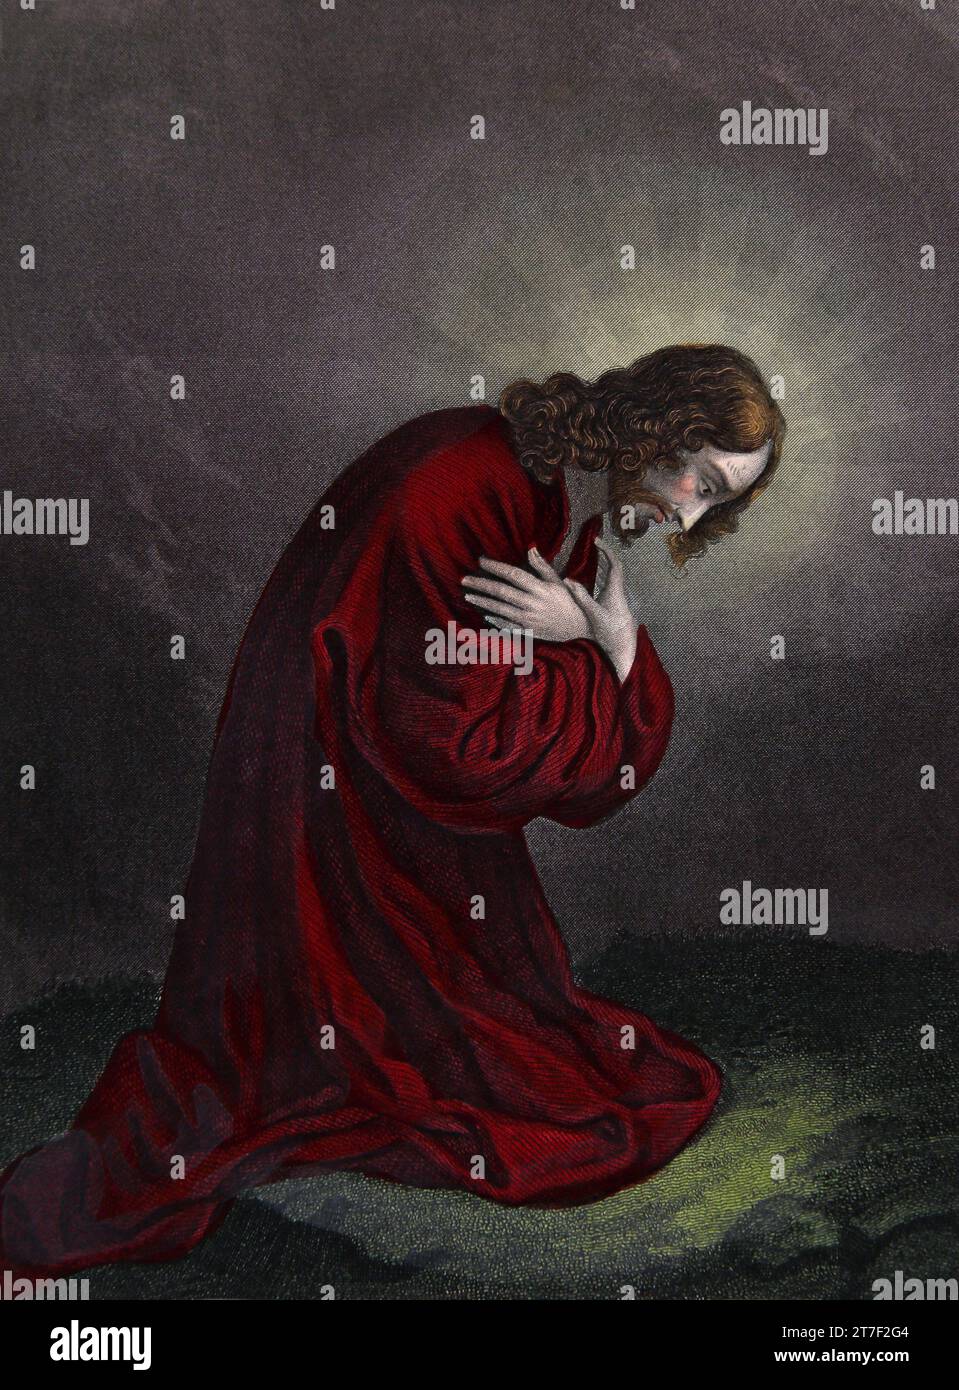 Illustrazione di Gesù Cristo inginocchiato e pregare per la seconda volta nel Giardino del Getsemani (Matteo XXVI.42) dalla famiglia di Auto-interpretazione Foto Stock